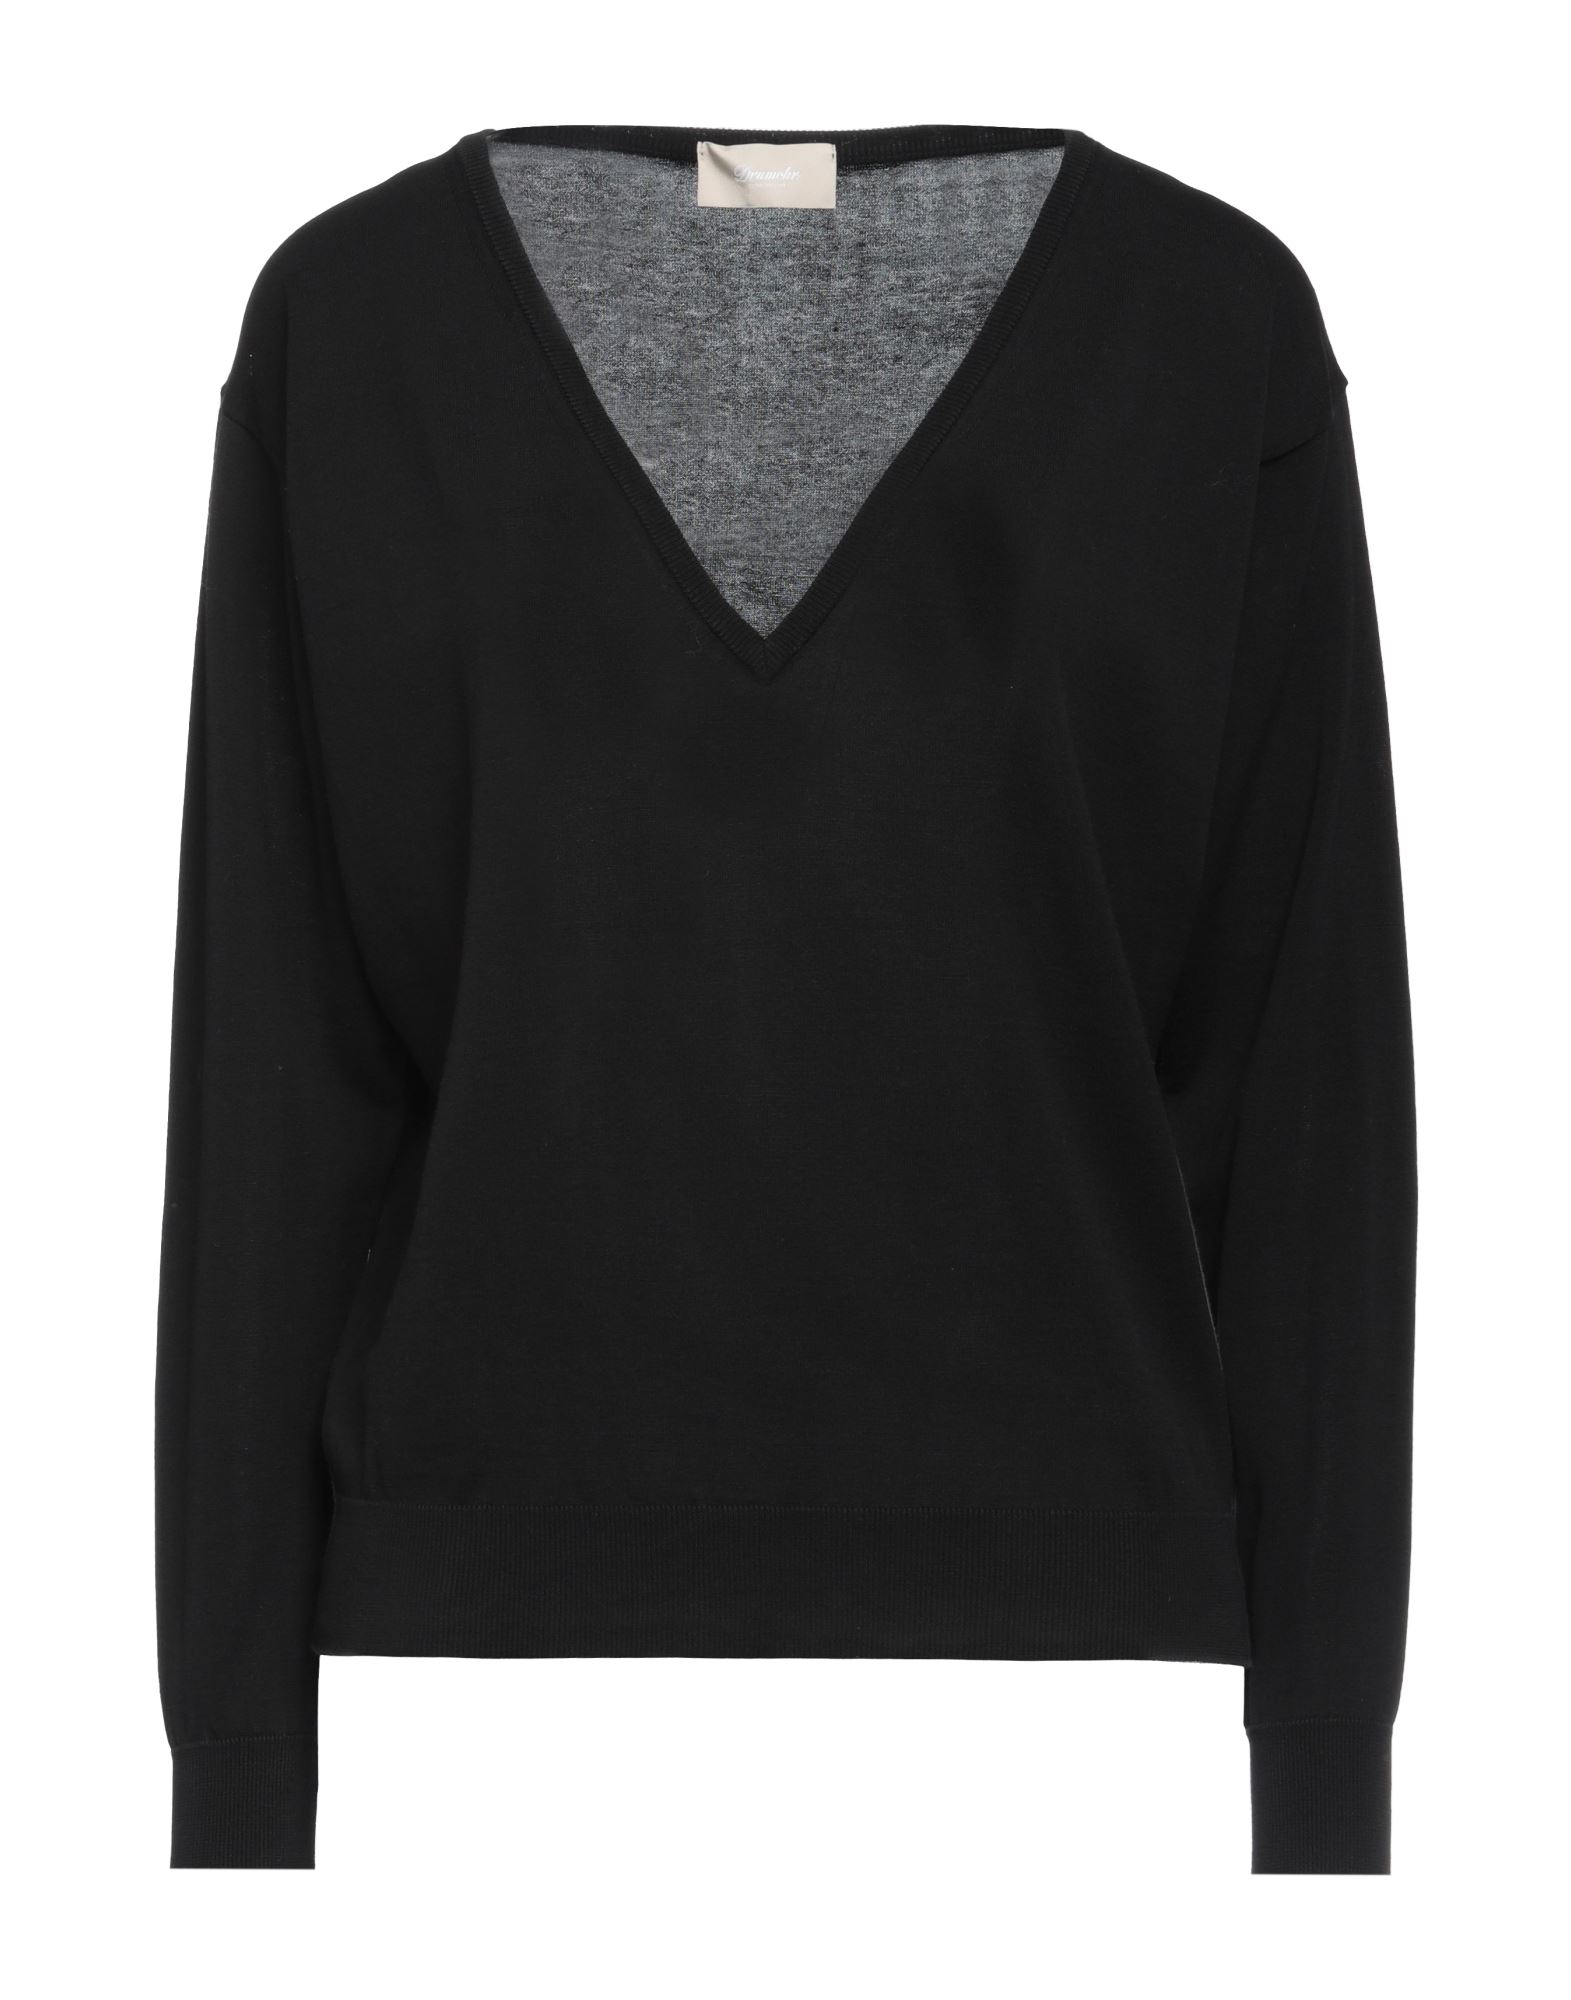 Shop Drumohr Woman Sweater Black Size L Cotton